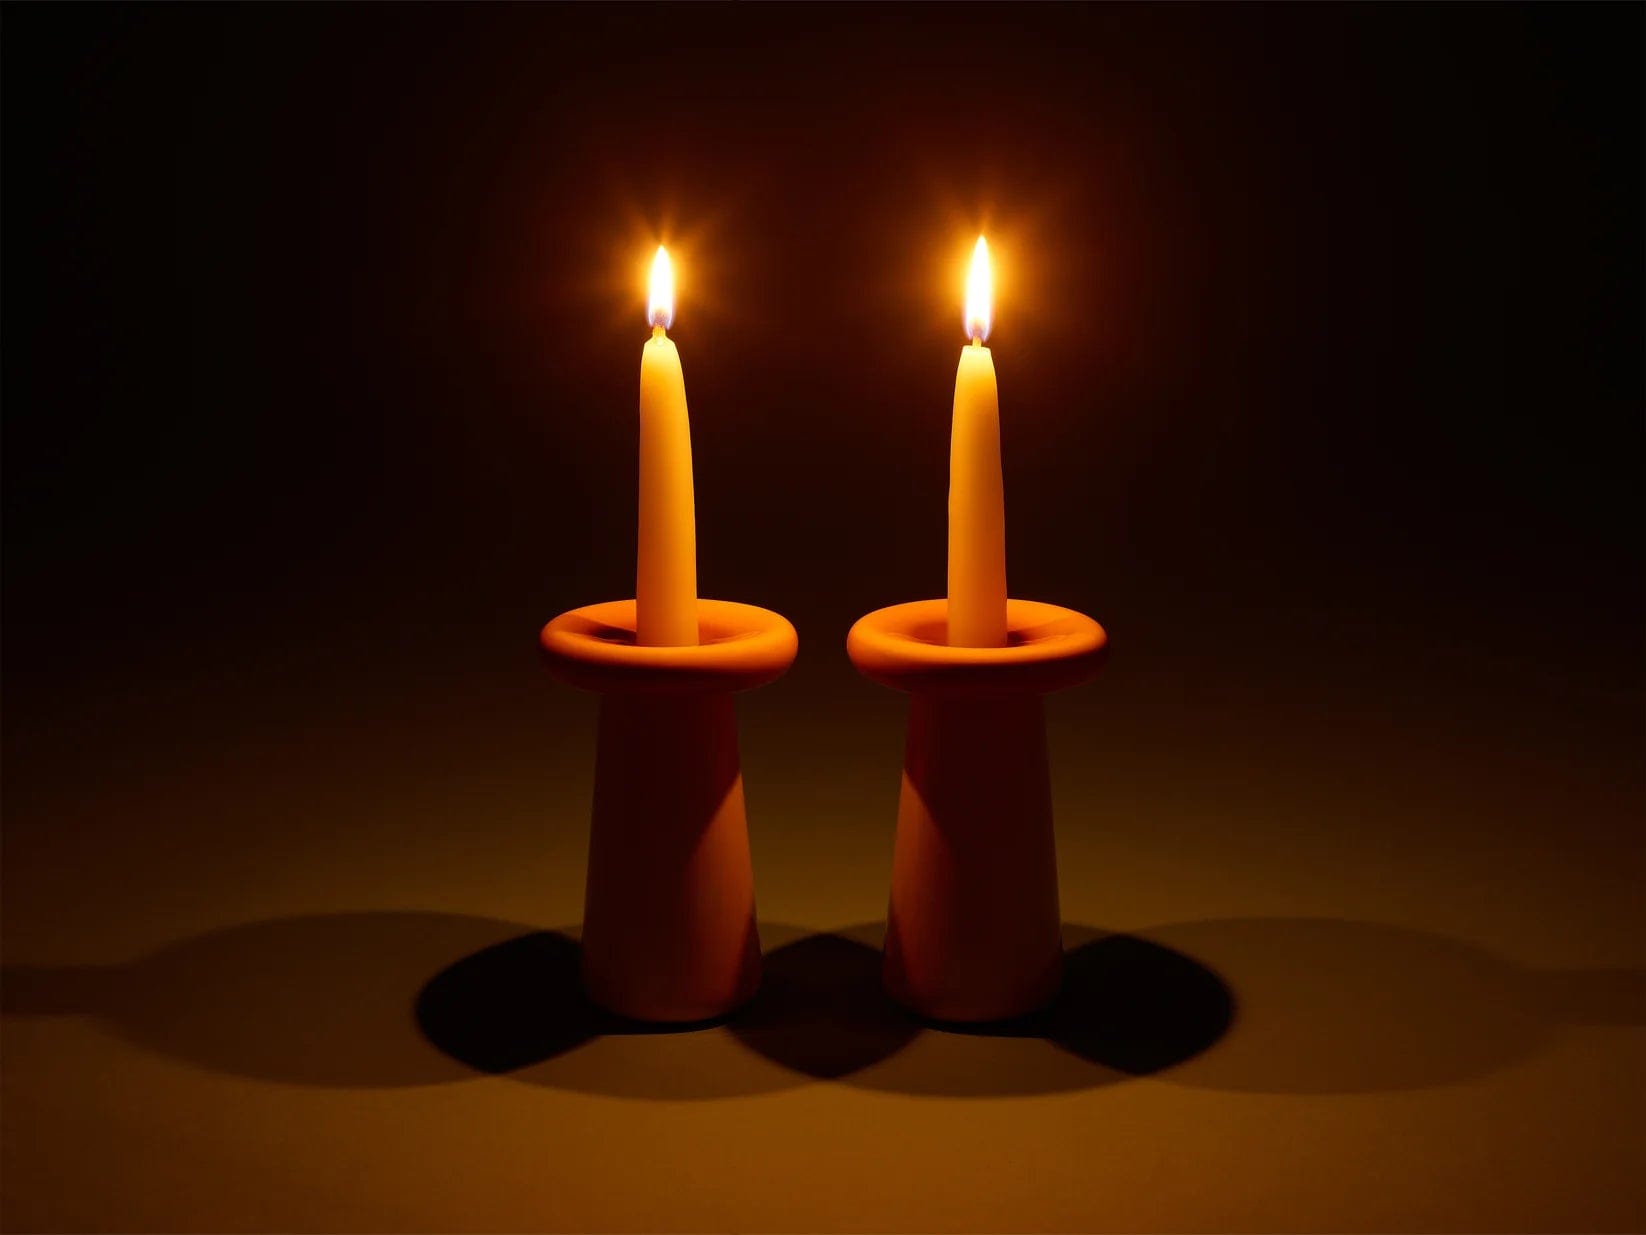 Tchotchke Judaica Candlesticks Rose-/Coral Mushroom Candlesticks - Rose/Coral